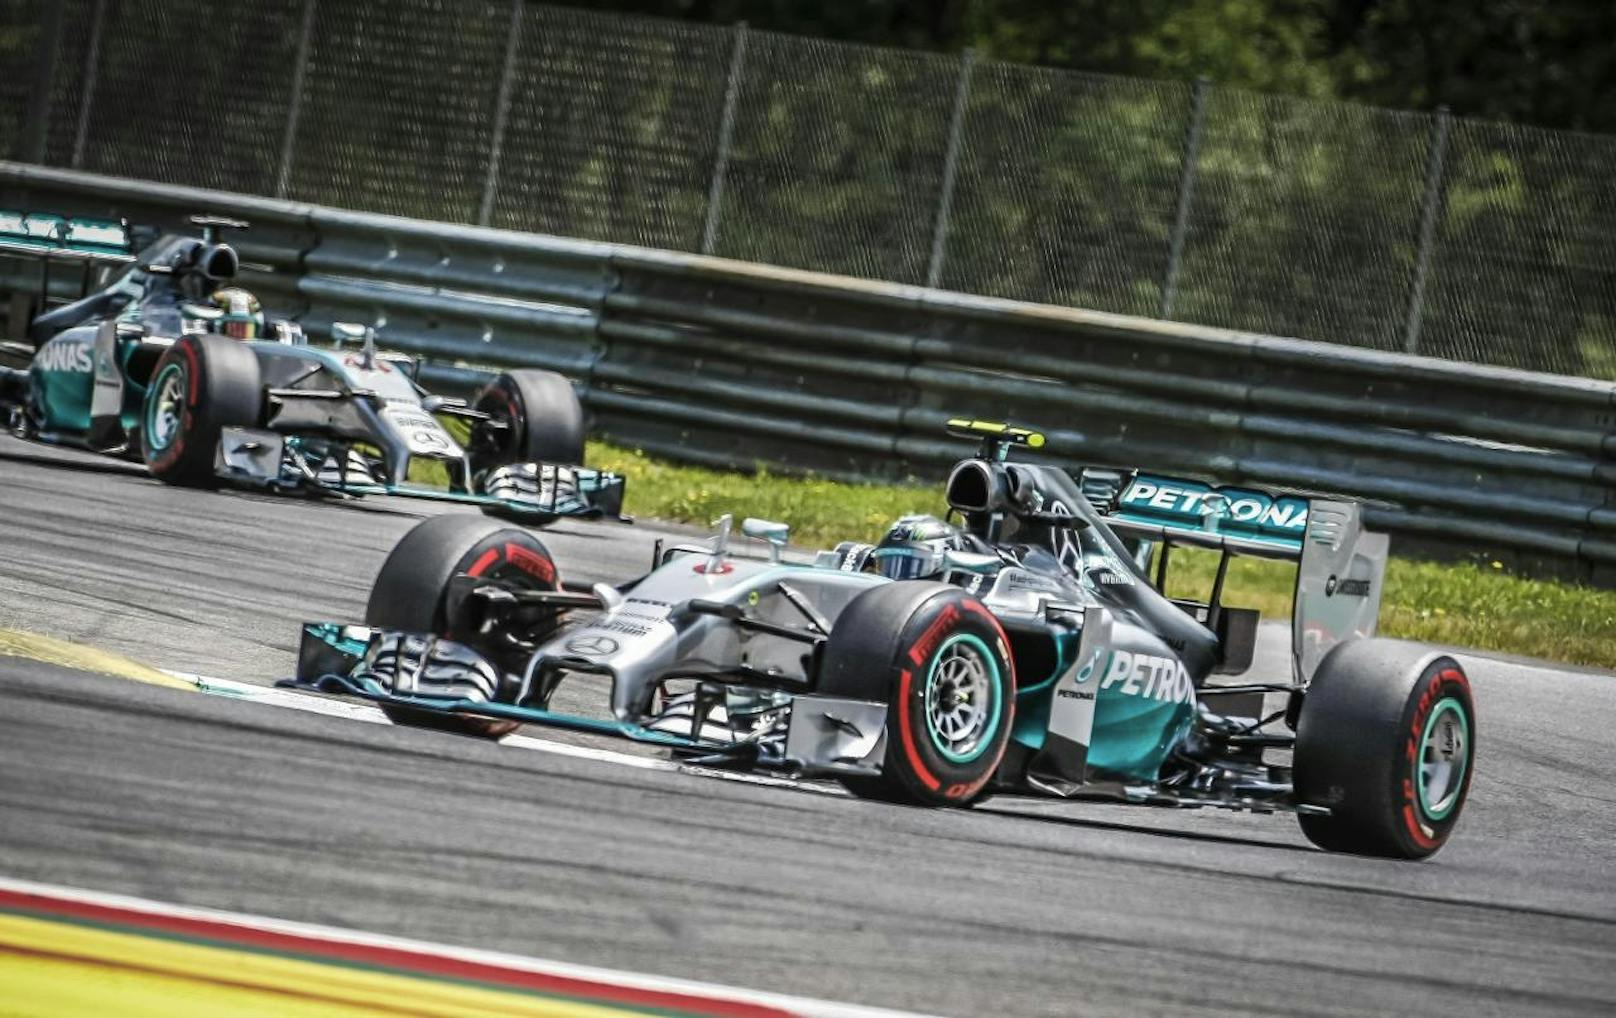 Formationsflug zum Doppelsieg! Beim Comeback auf dem Red Bull Ring fuhr Nico Rosberg (GER) vor seinem Teamkollegen Lewis Hamilton zum Sieg.